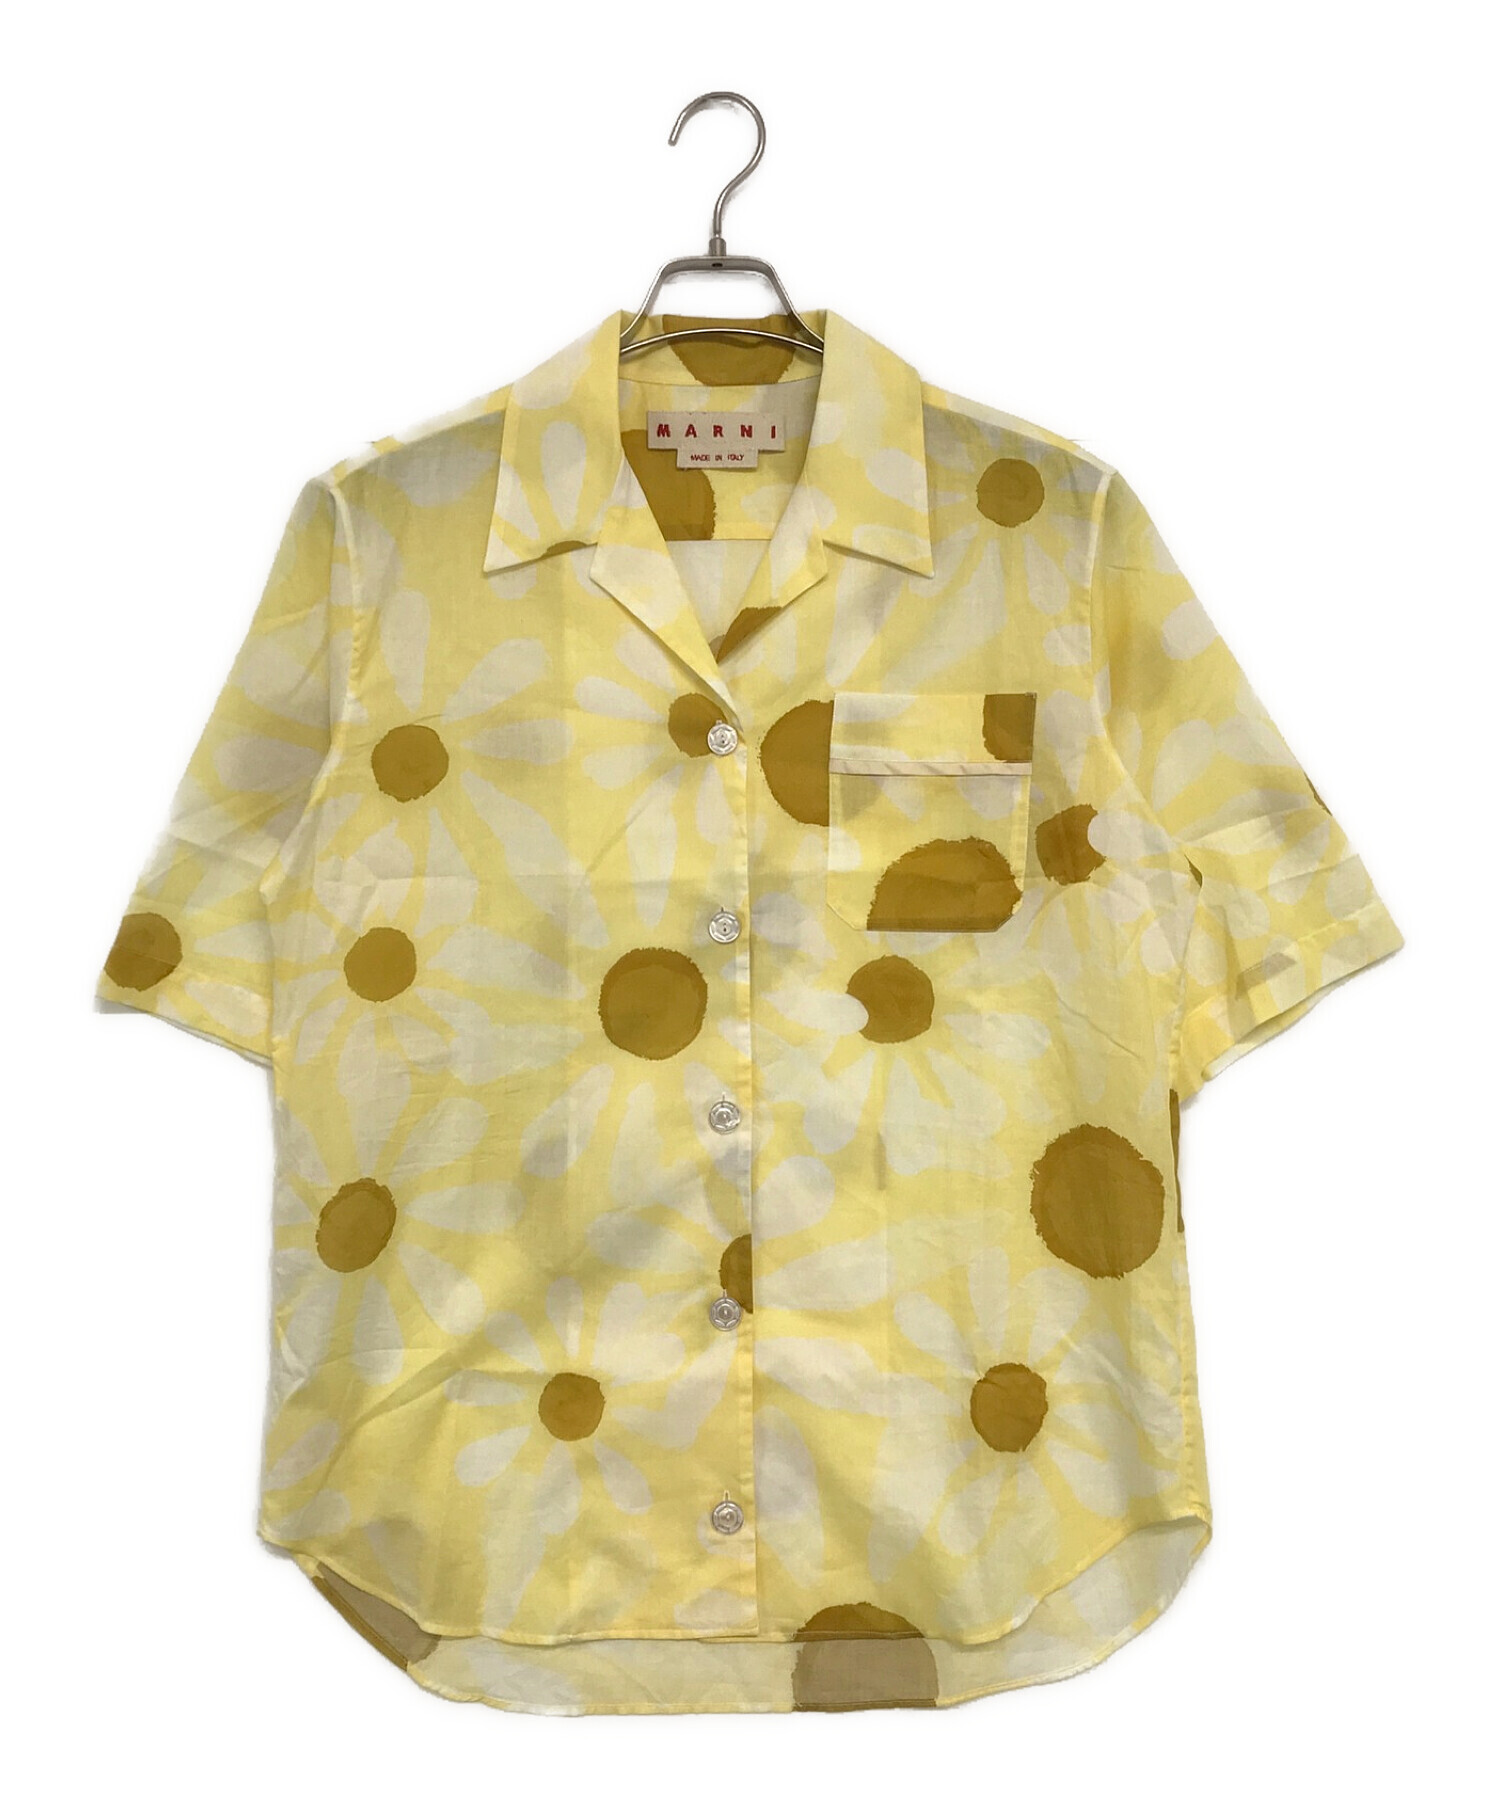 MARNI (マルニ) オープンカラーシャツ イエロー サイズ:38